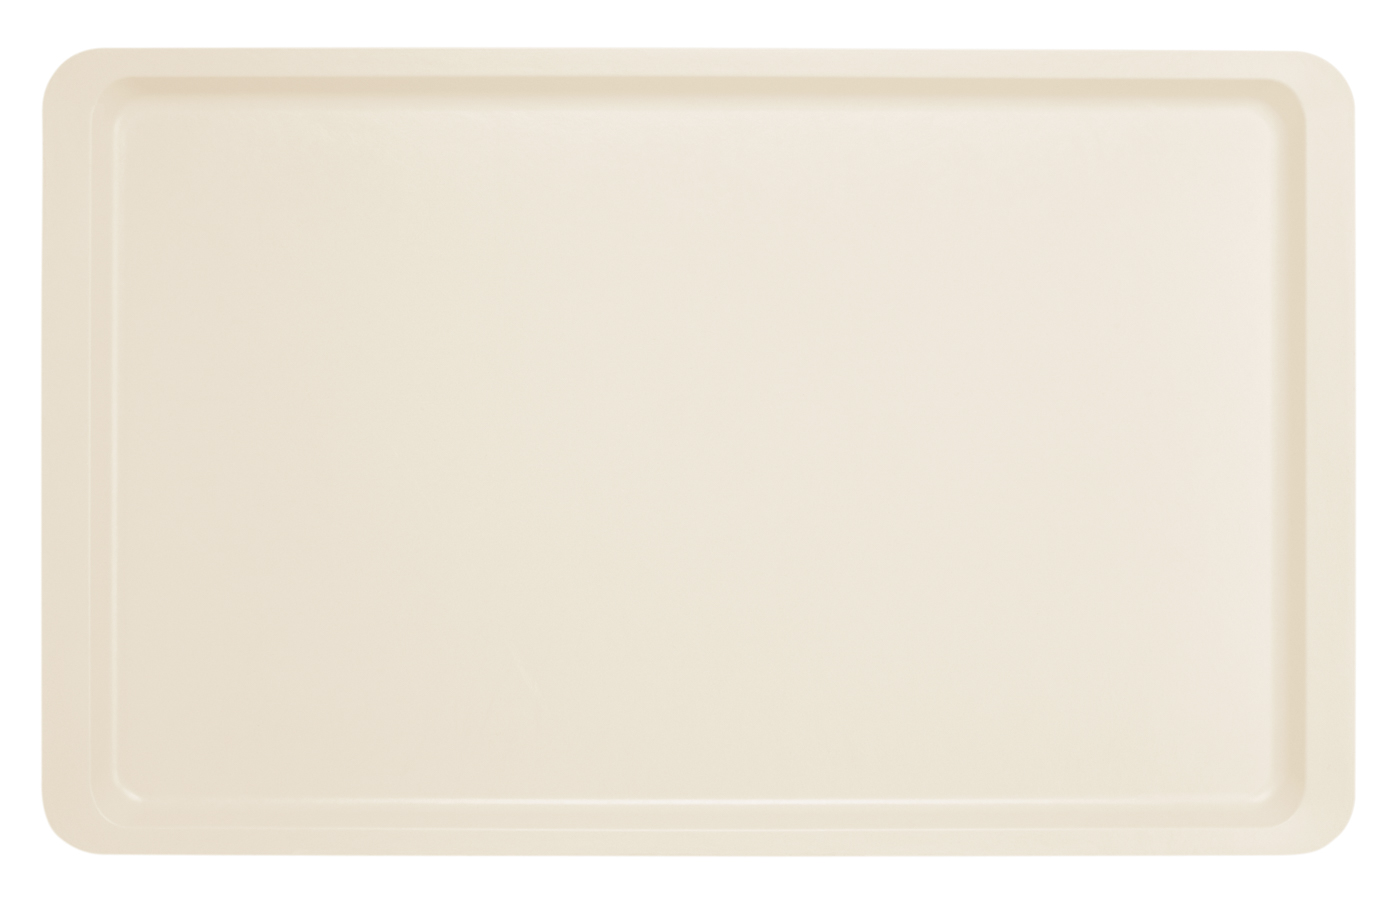 Tablett 530 x 325 mm Farbe: perlweiss Deutsche Spitzenqualität